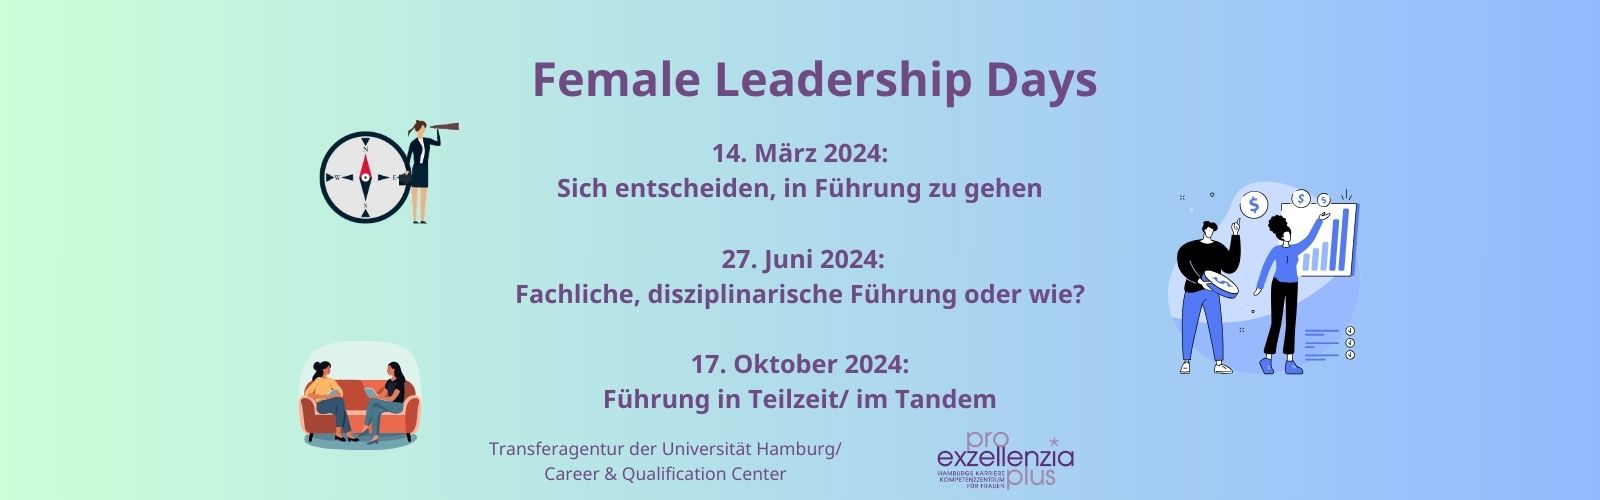 Slide zu den Female Leadership Days - eine Kooperation von Pro Exzellenzia plus* und der Transferagentur der Universität Hamburg